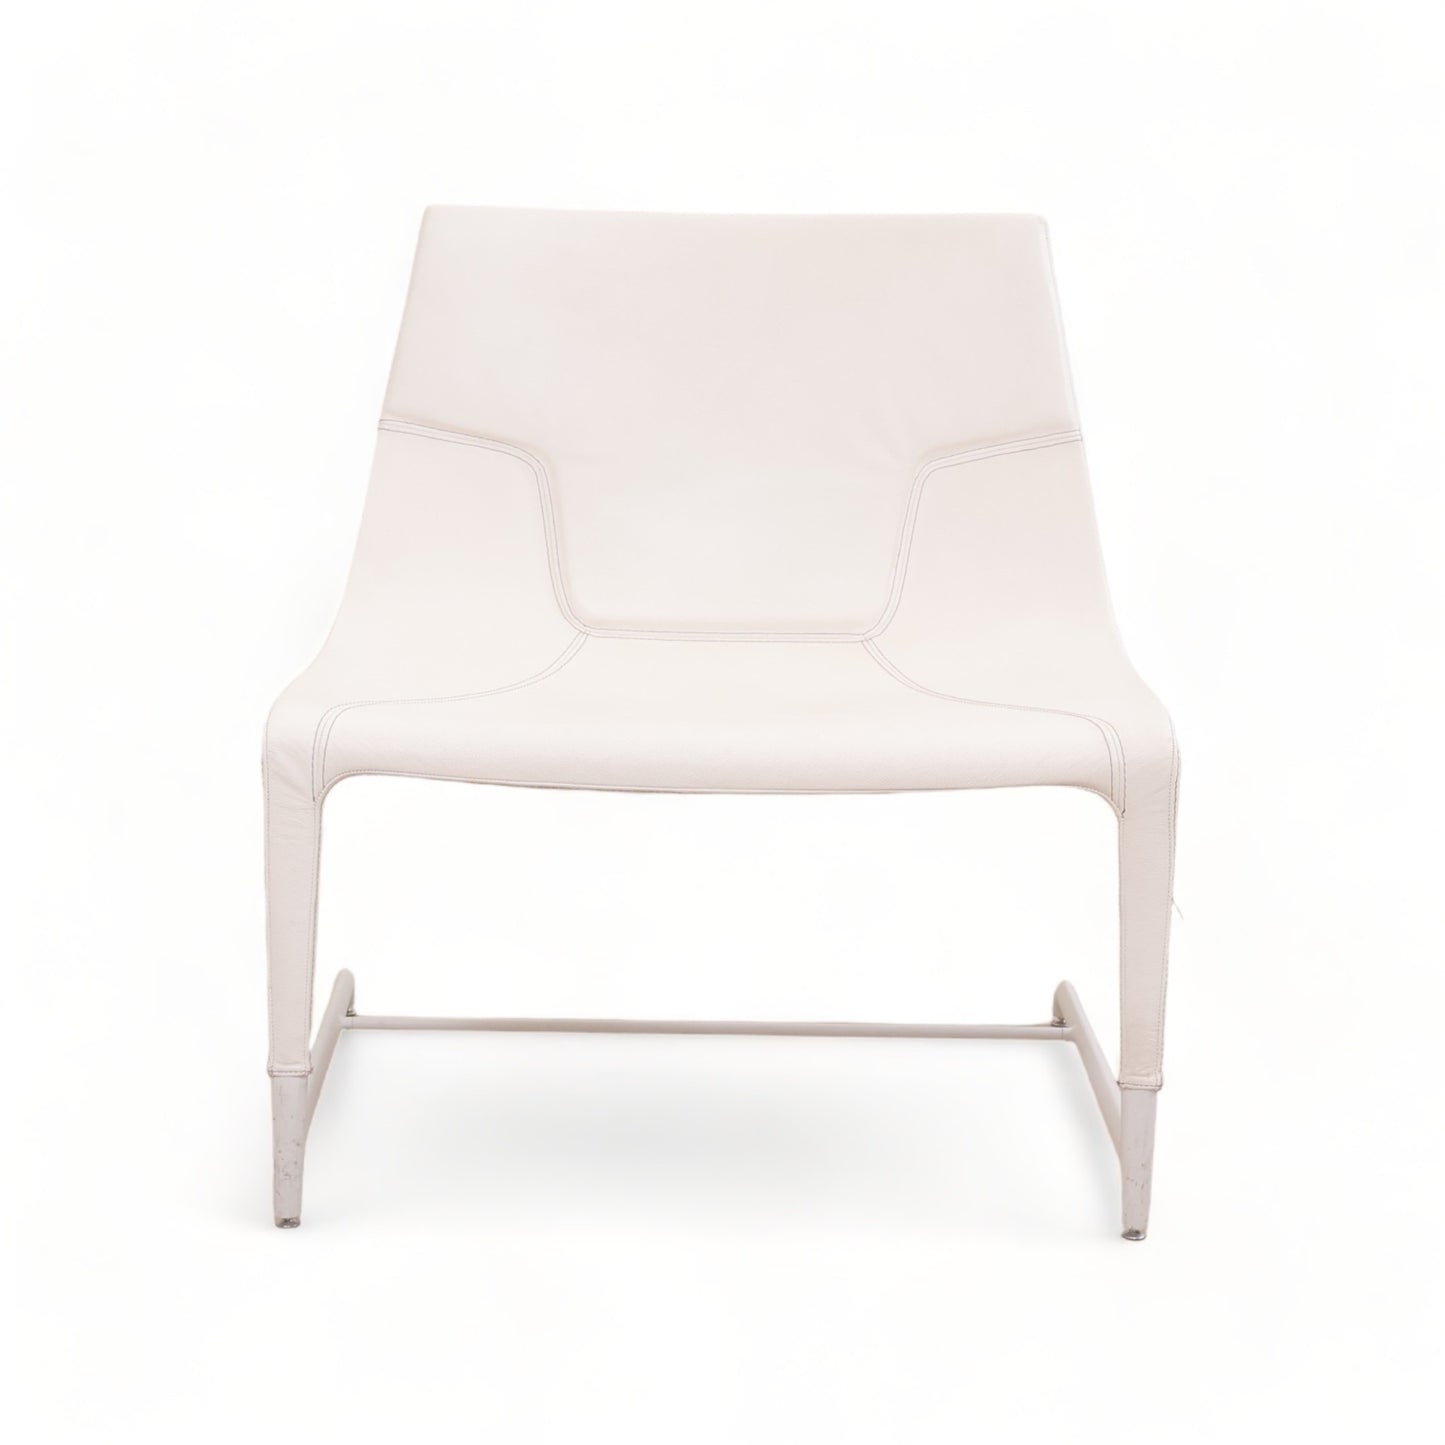 Nyrenset | Hvit ventestol fra Emmegi